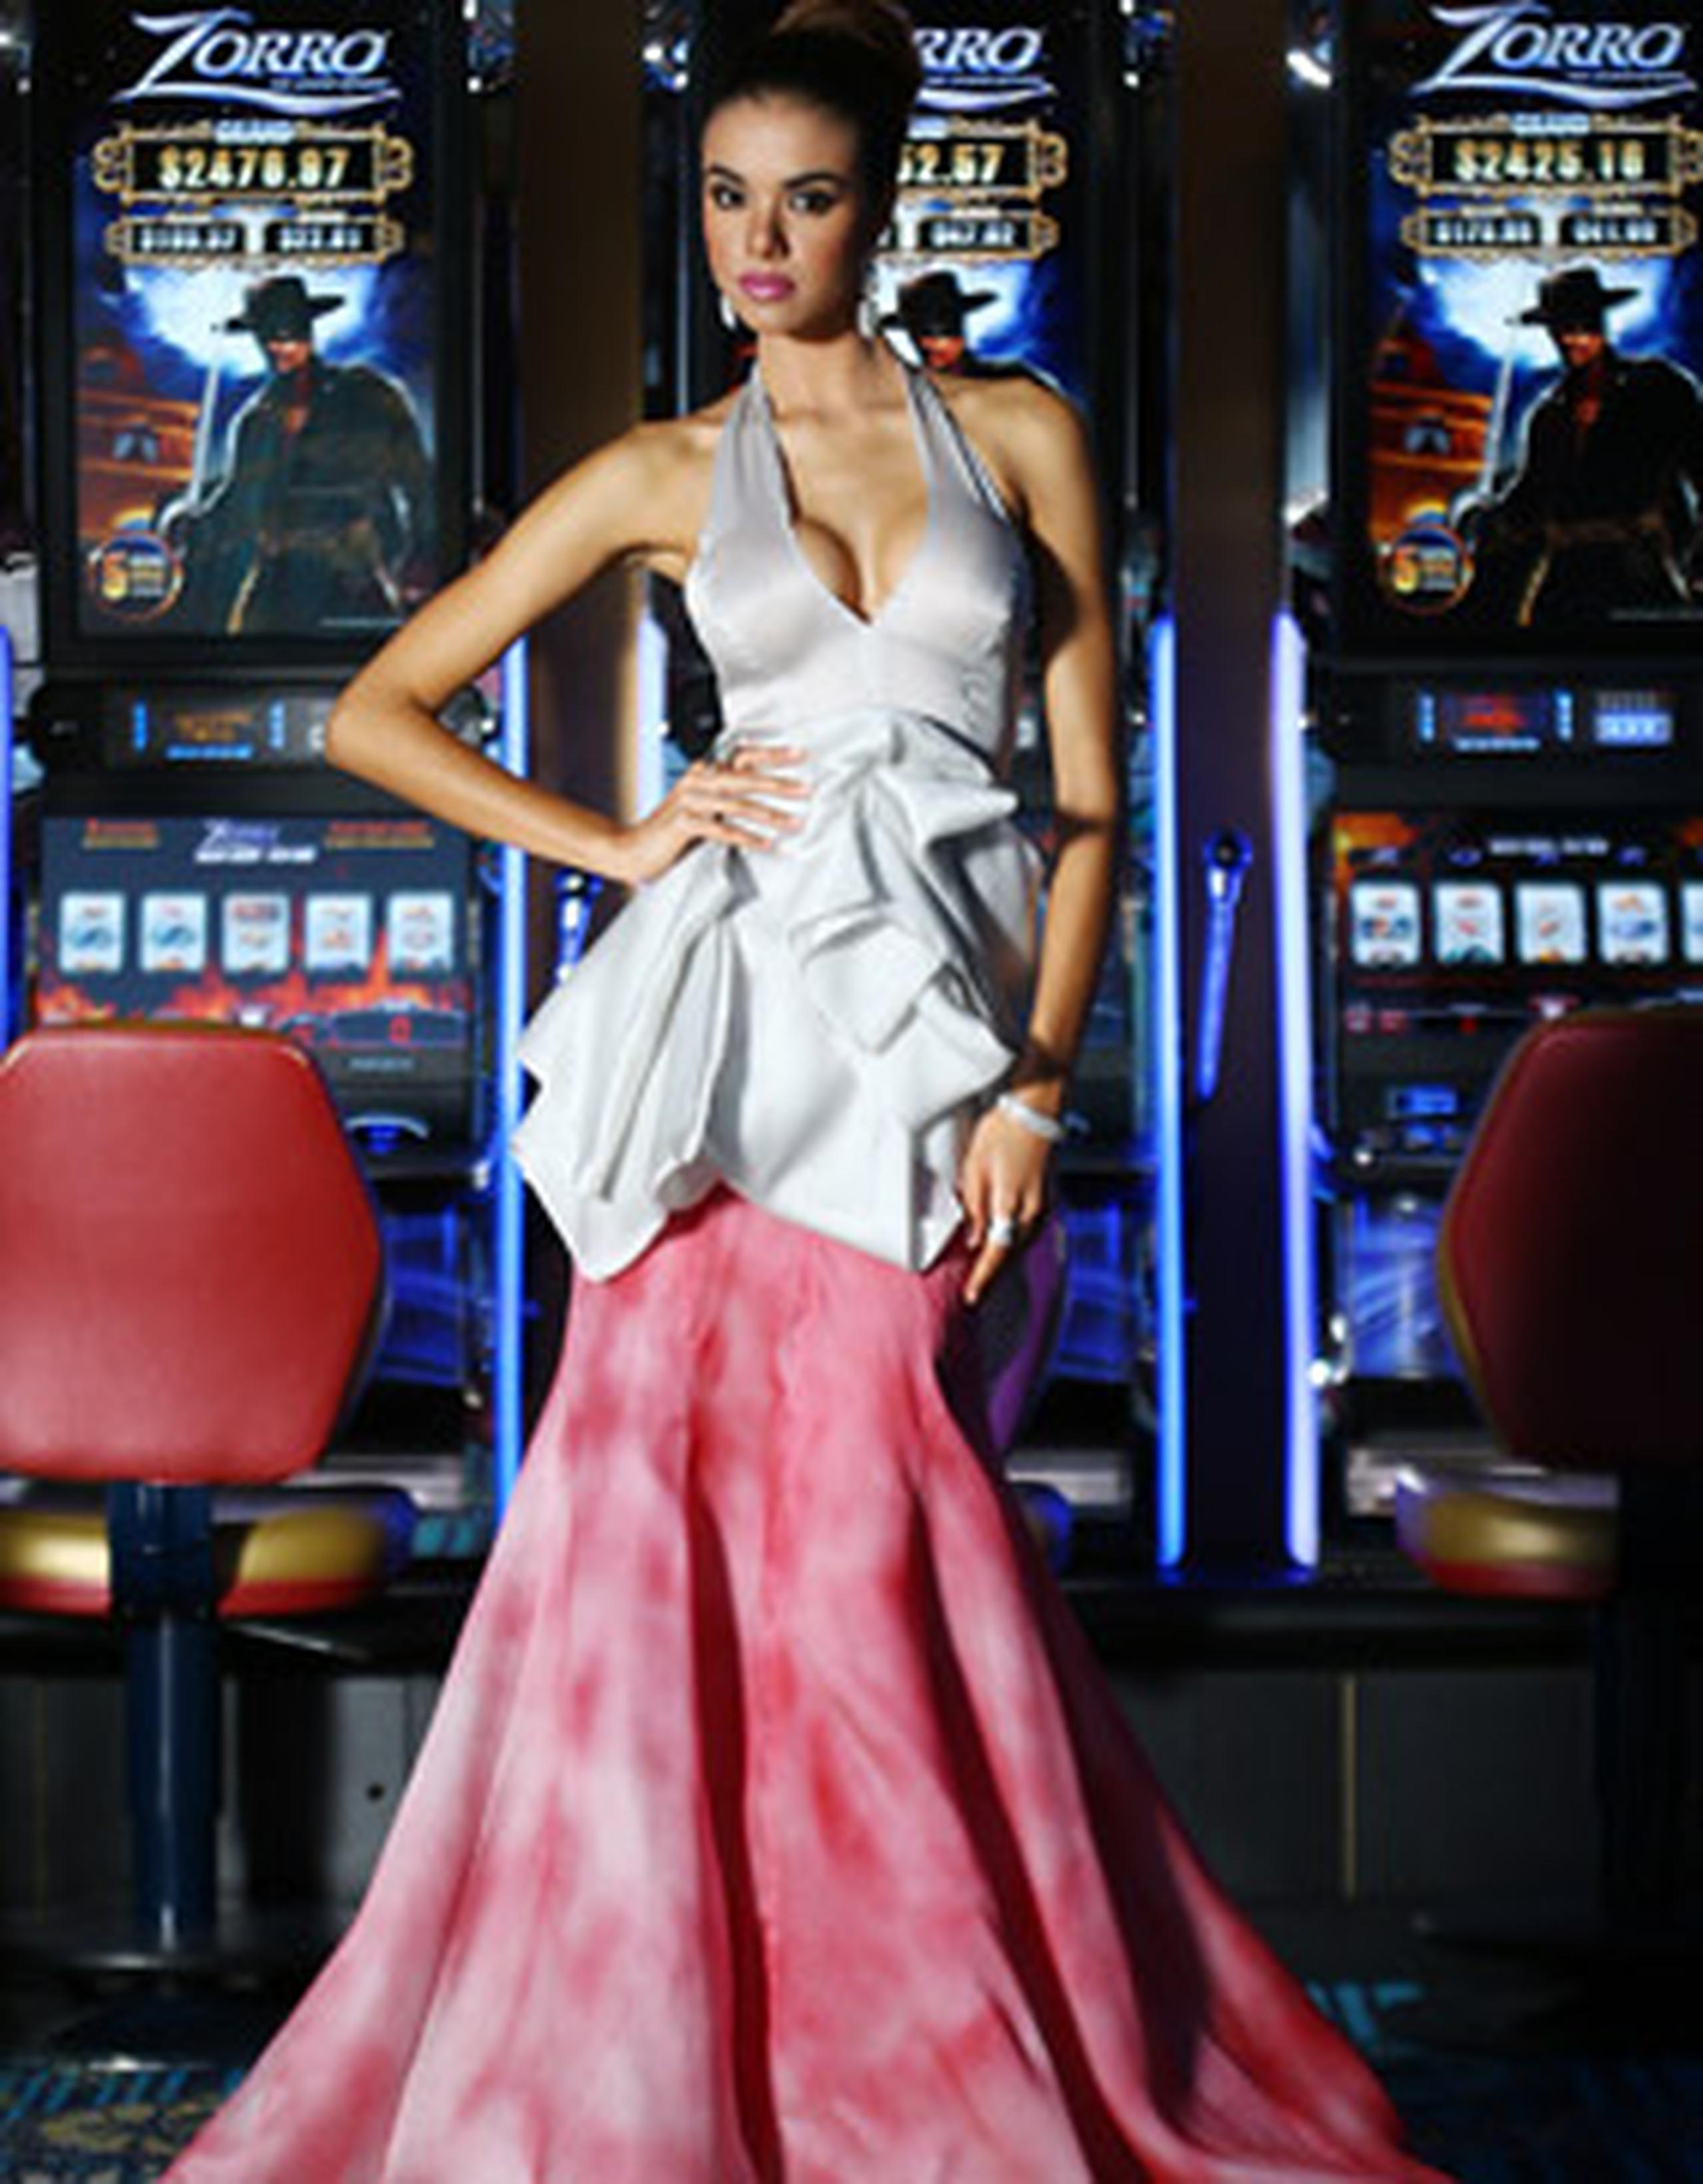 Miss Universe Puerto Rico 2012 confía en que será la próxima reina del universo y reafirma su identidad al exclamar: “¡Yo soy boricua!”. (jose.madera@gfrmedia.com)